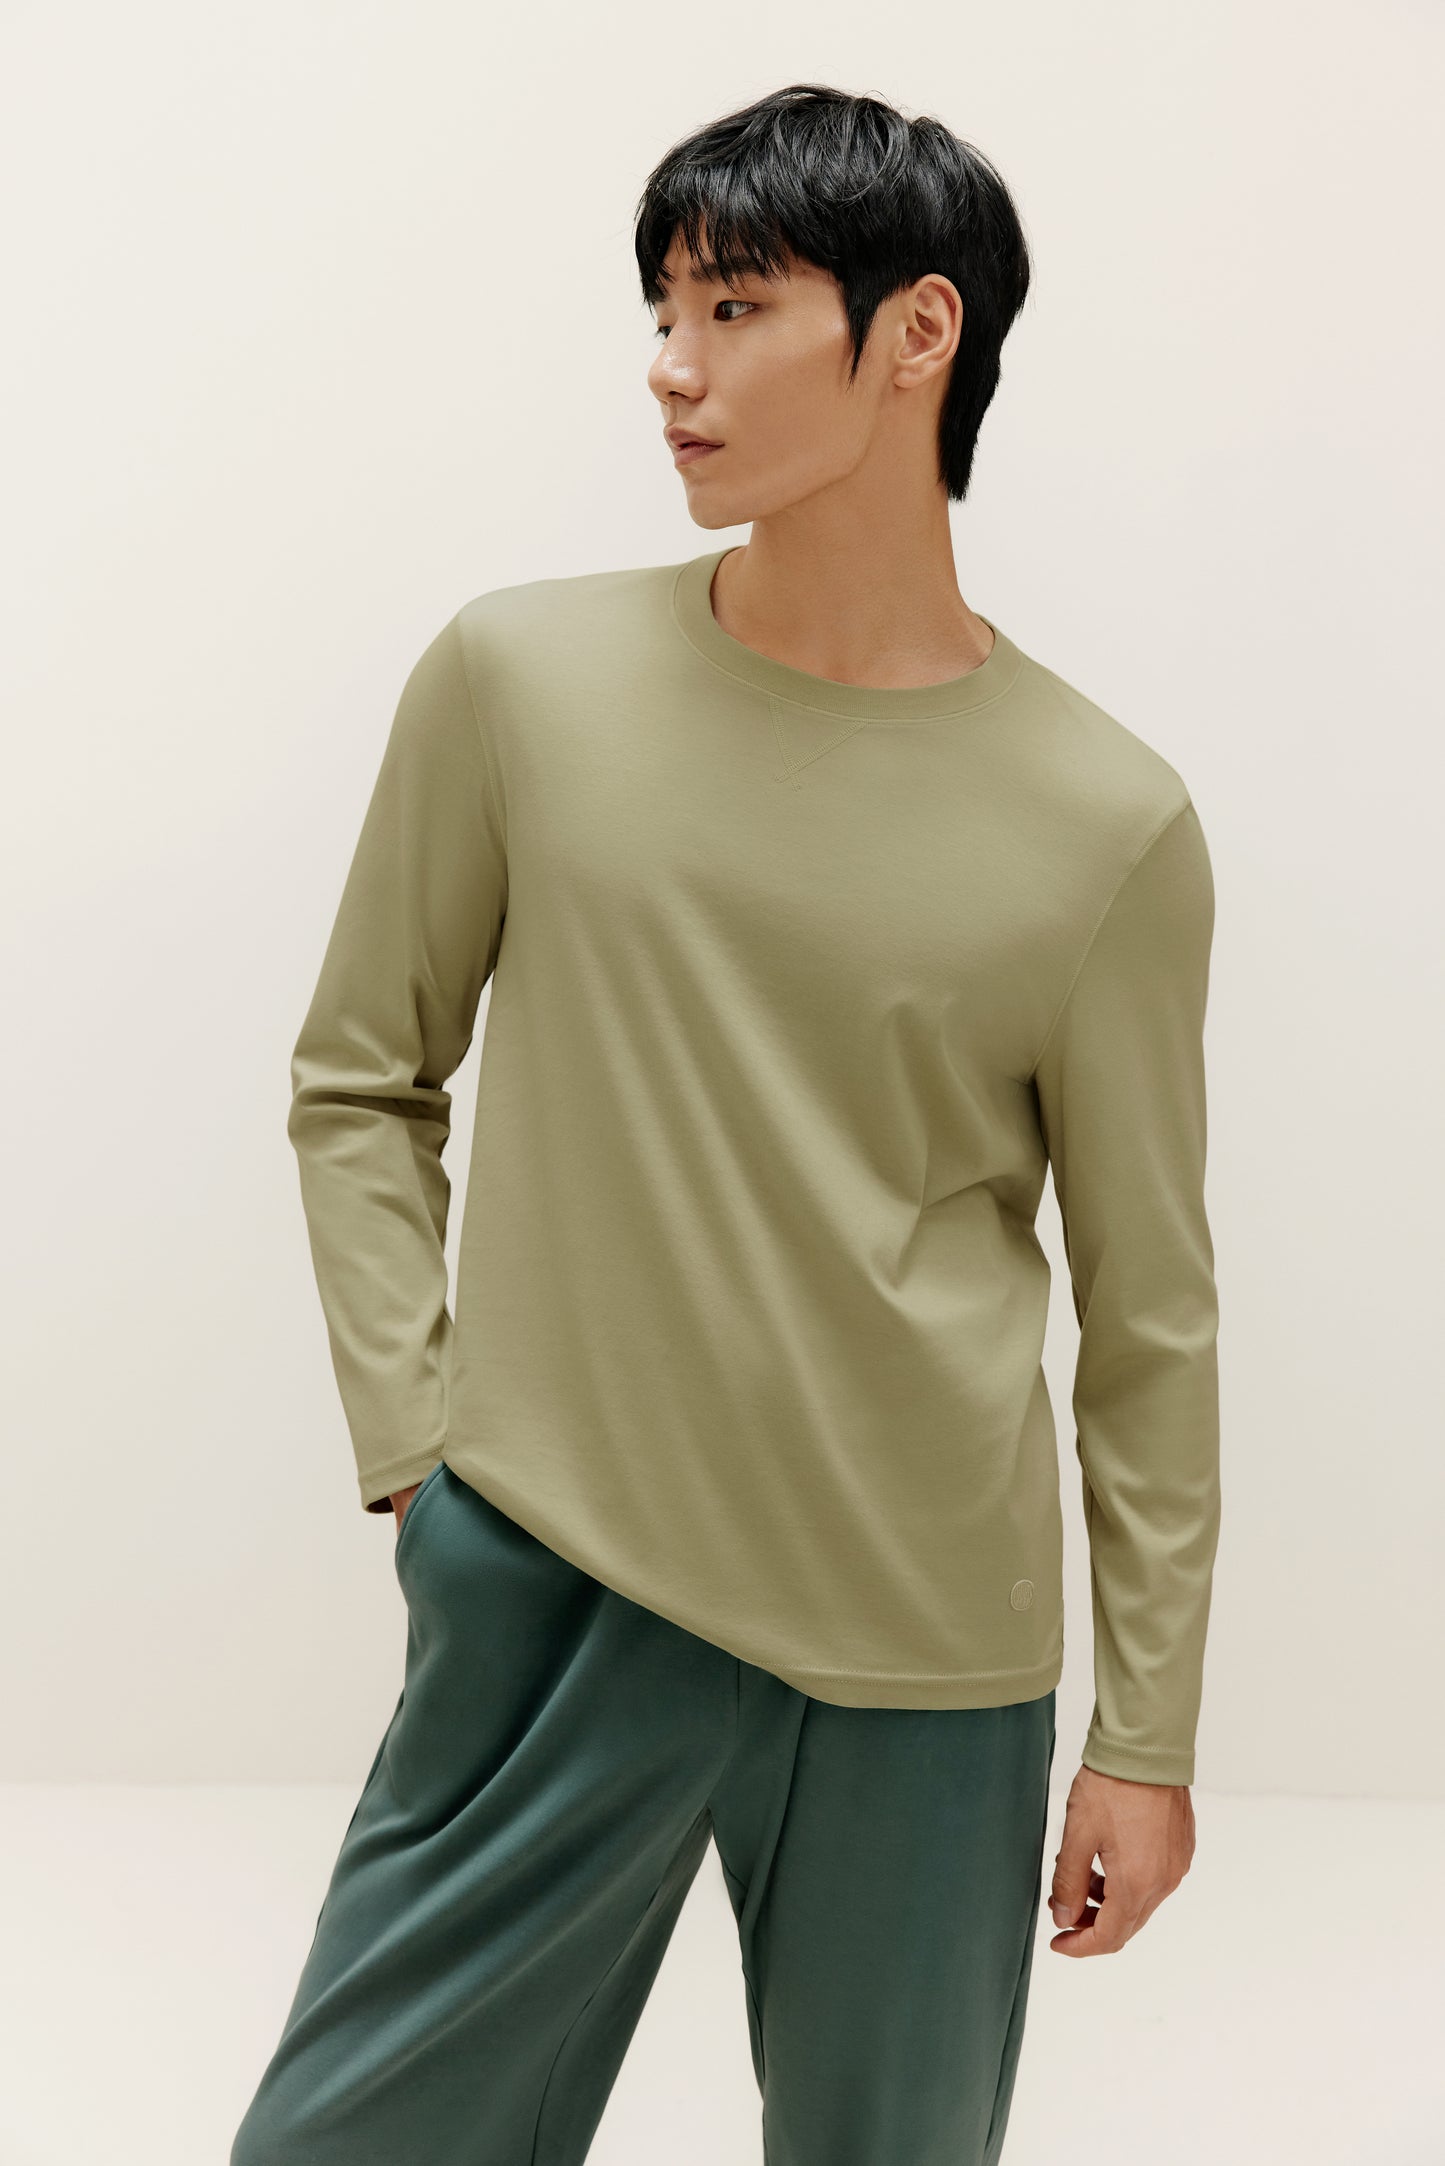 Men's Basic Long Sleeved T-shirt